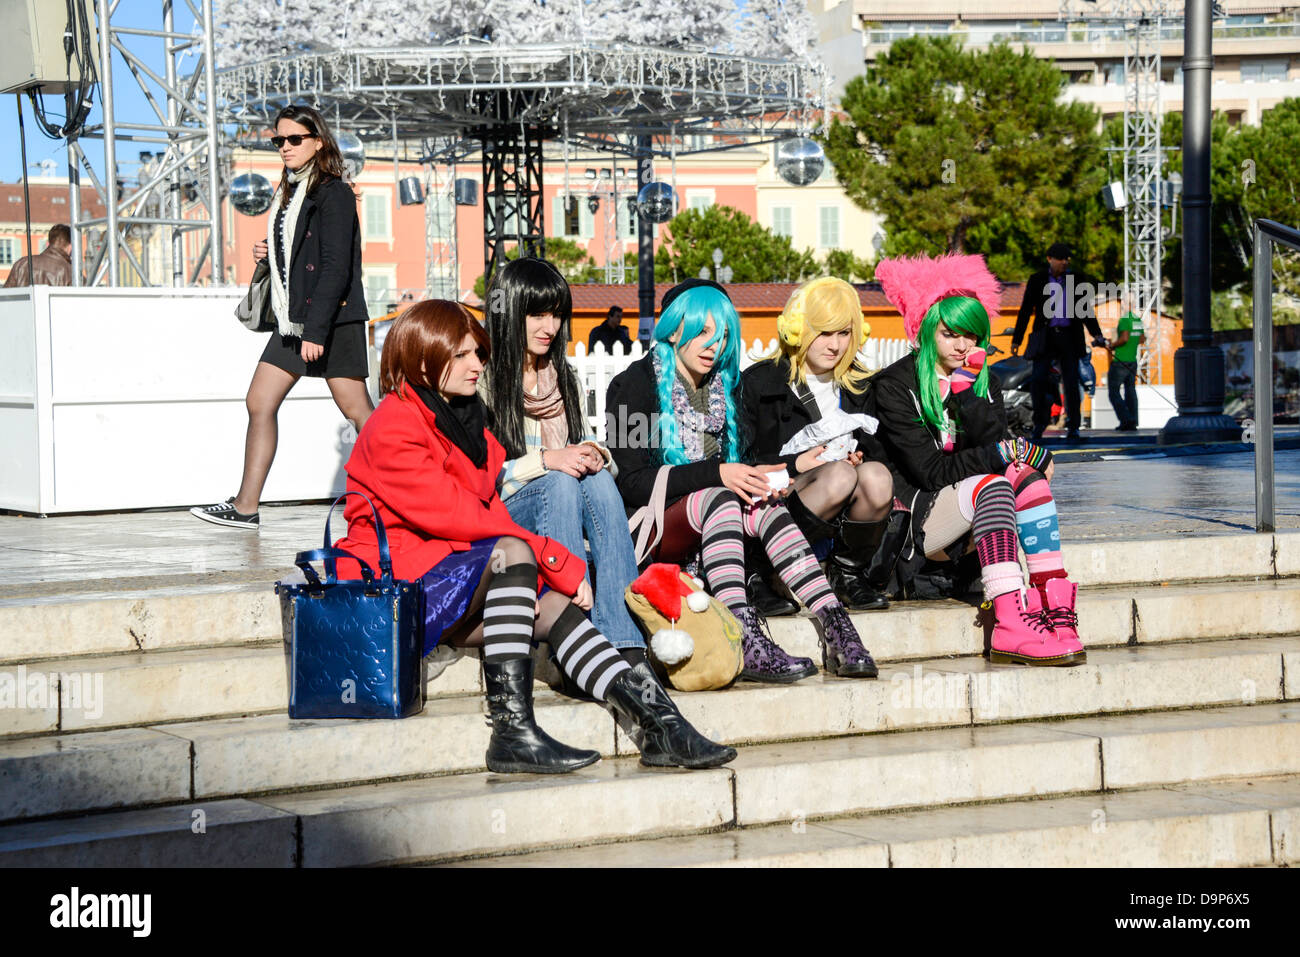 Le giovani ragazze vestito come punk-rock con variopinte parrucche in Nizza Francia Foto Stock